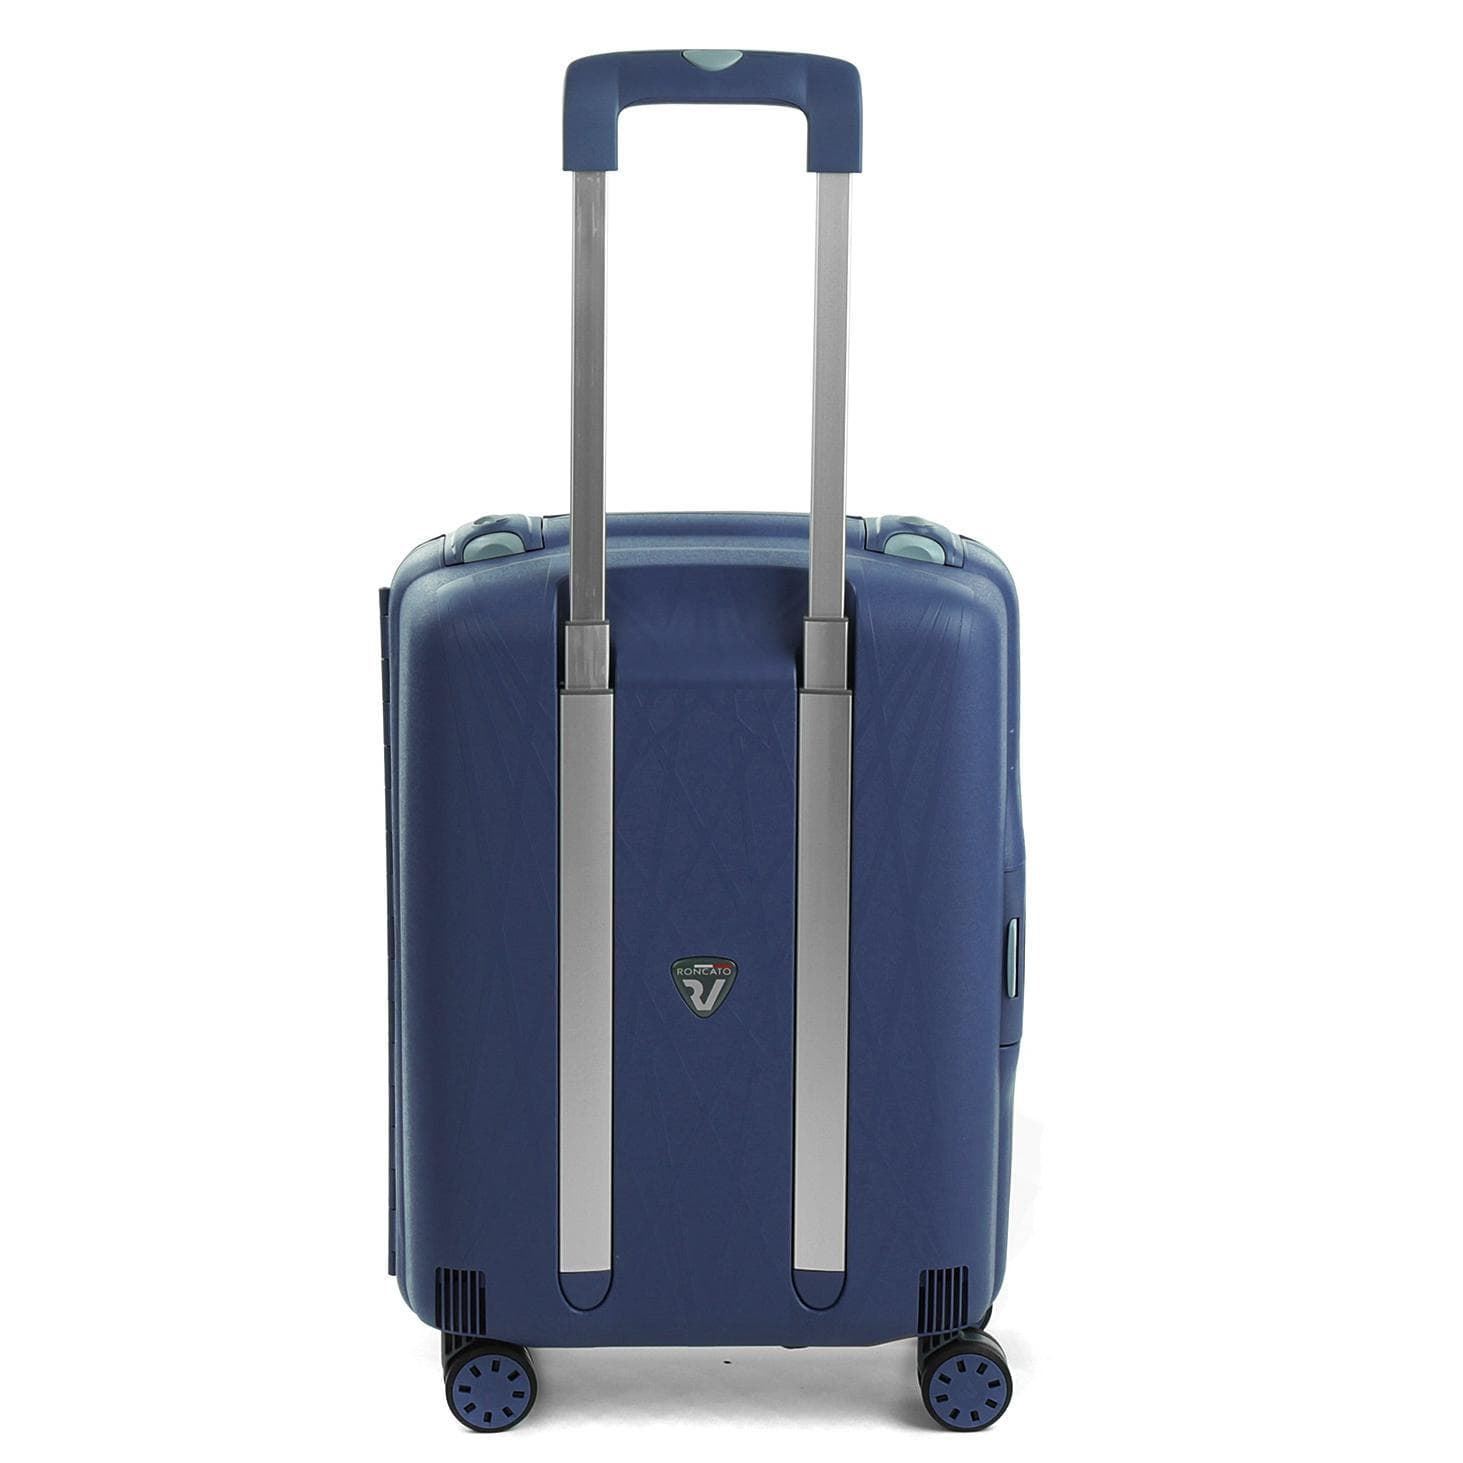 maleta cabina Roncato light spinner 4 ruedas azul marino - Imagen 5